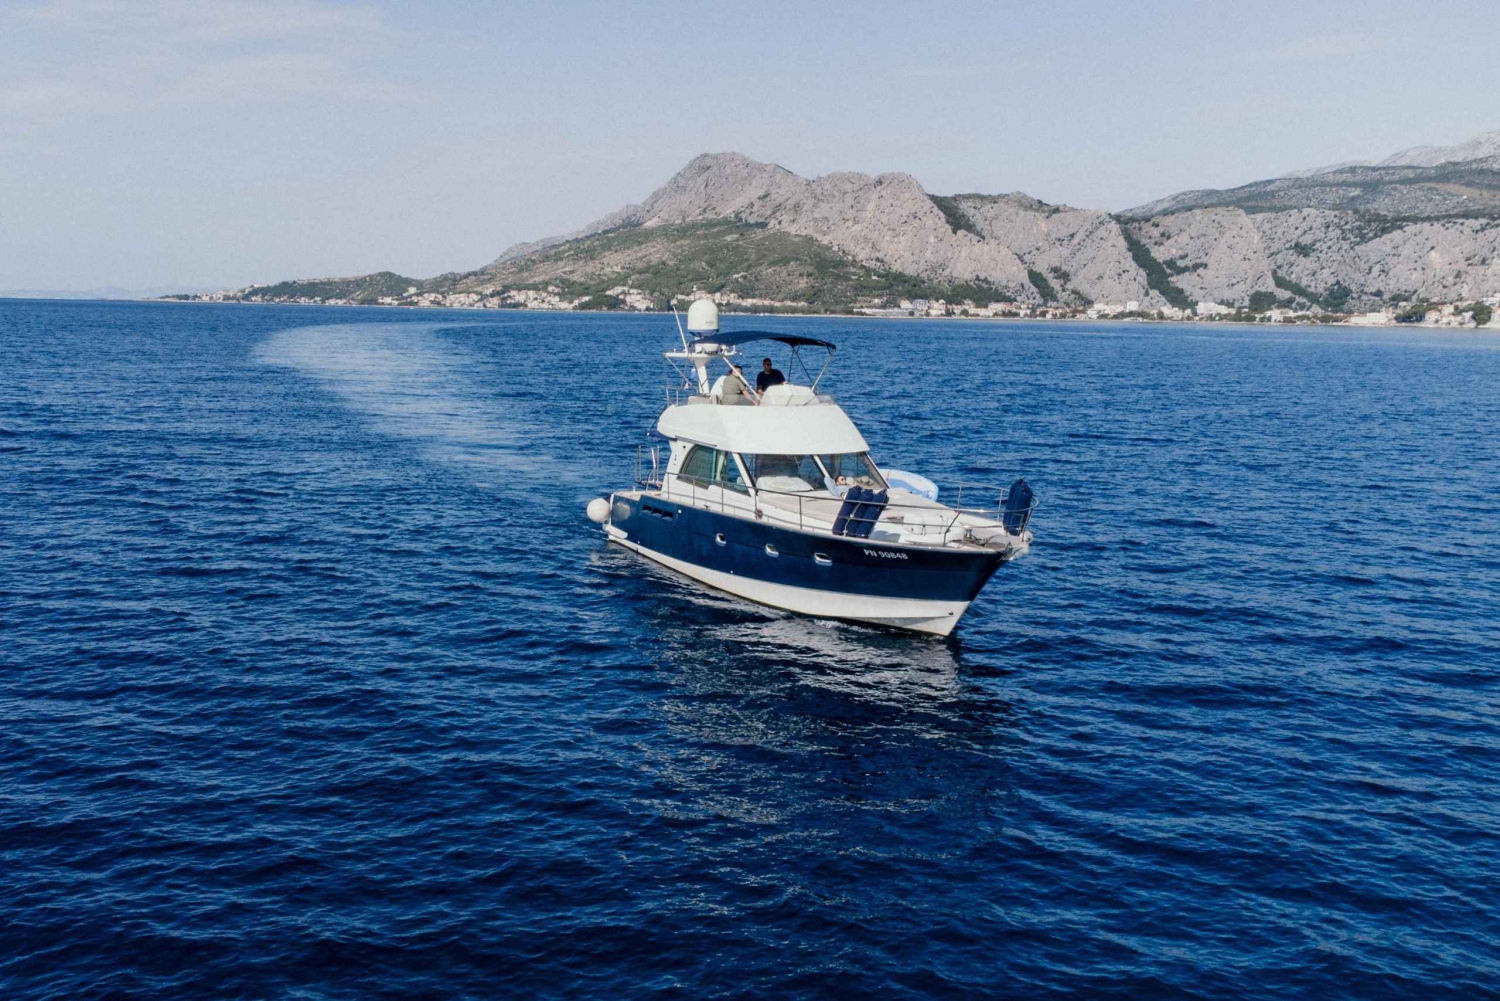 Da Spalato alle Isole Dalmate: Tour privato in yacht di lusso